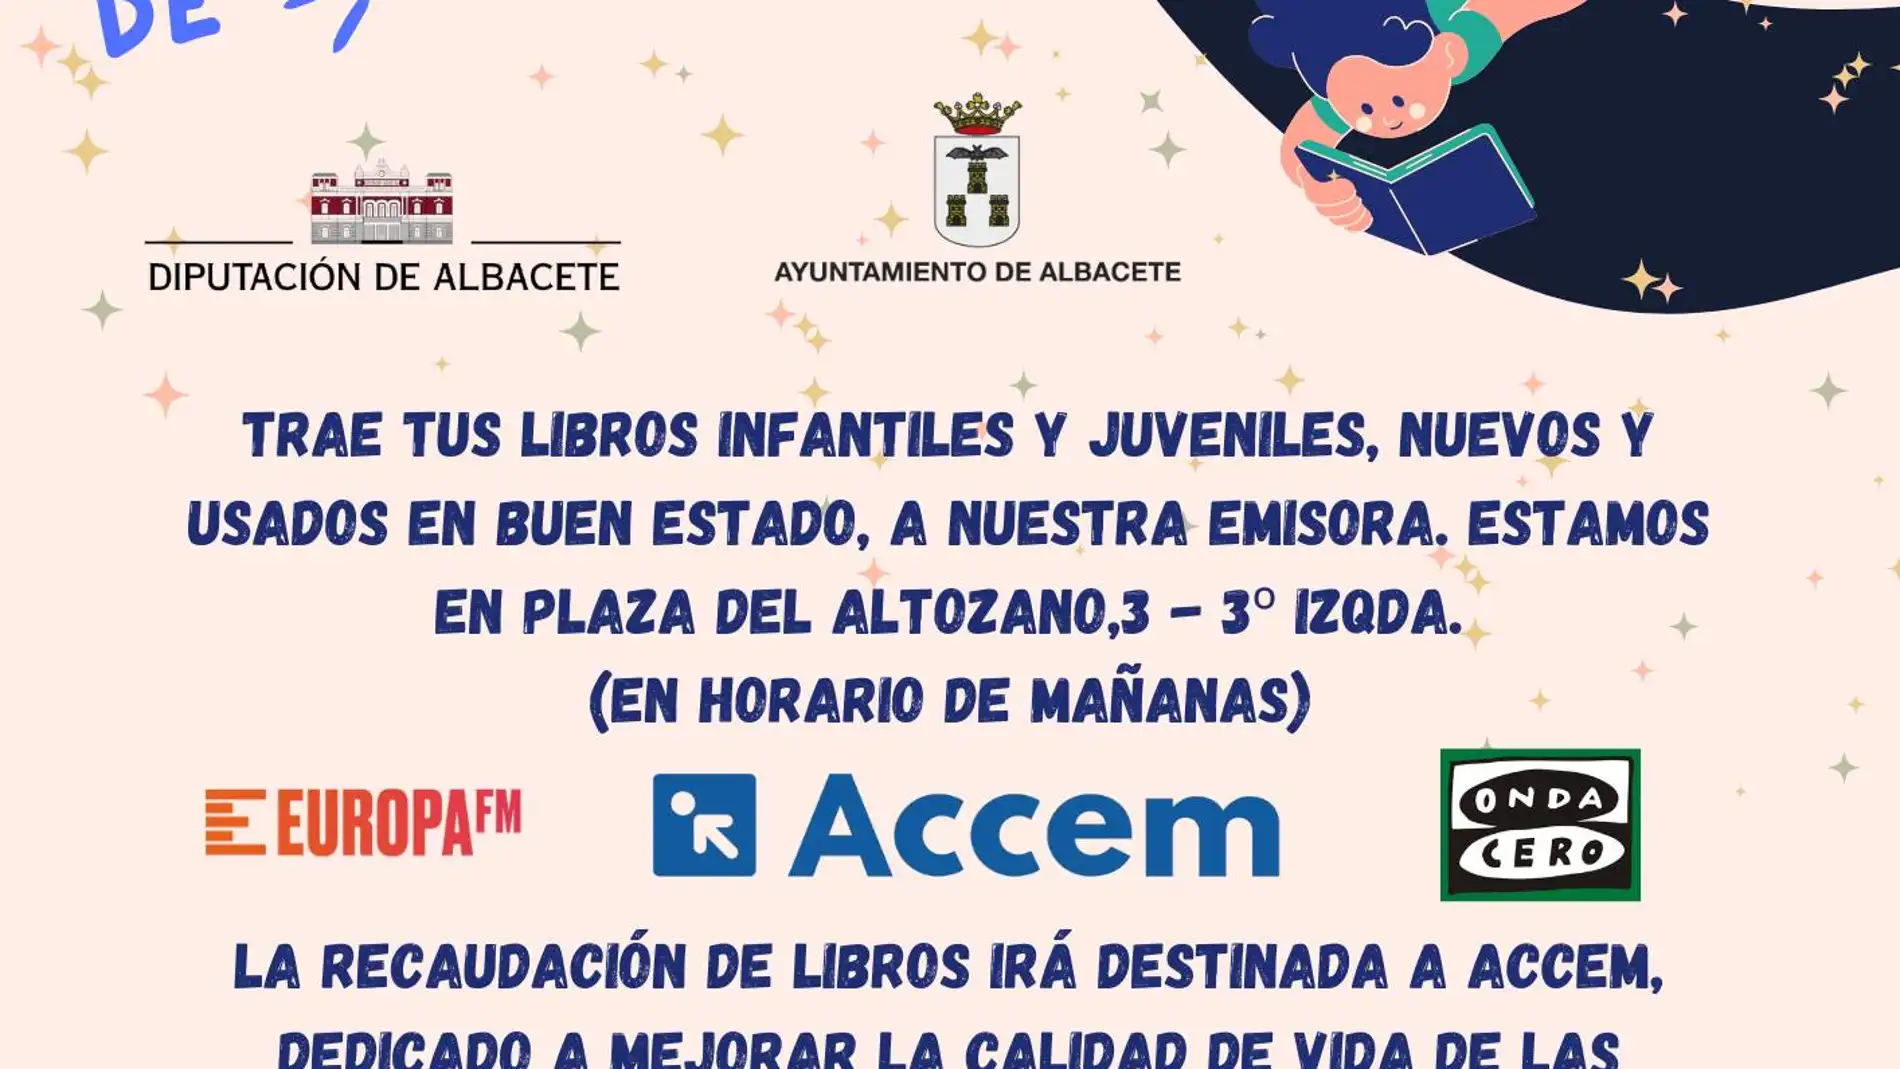 Regresa la acción solidaria Sonrisas de Cuento a Atresmedia Radio Albacete